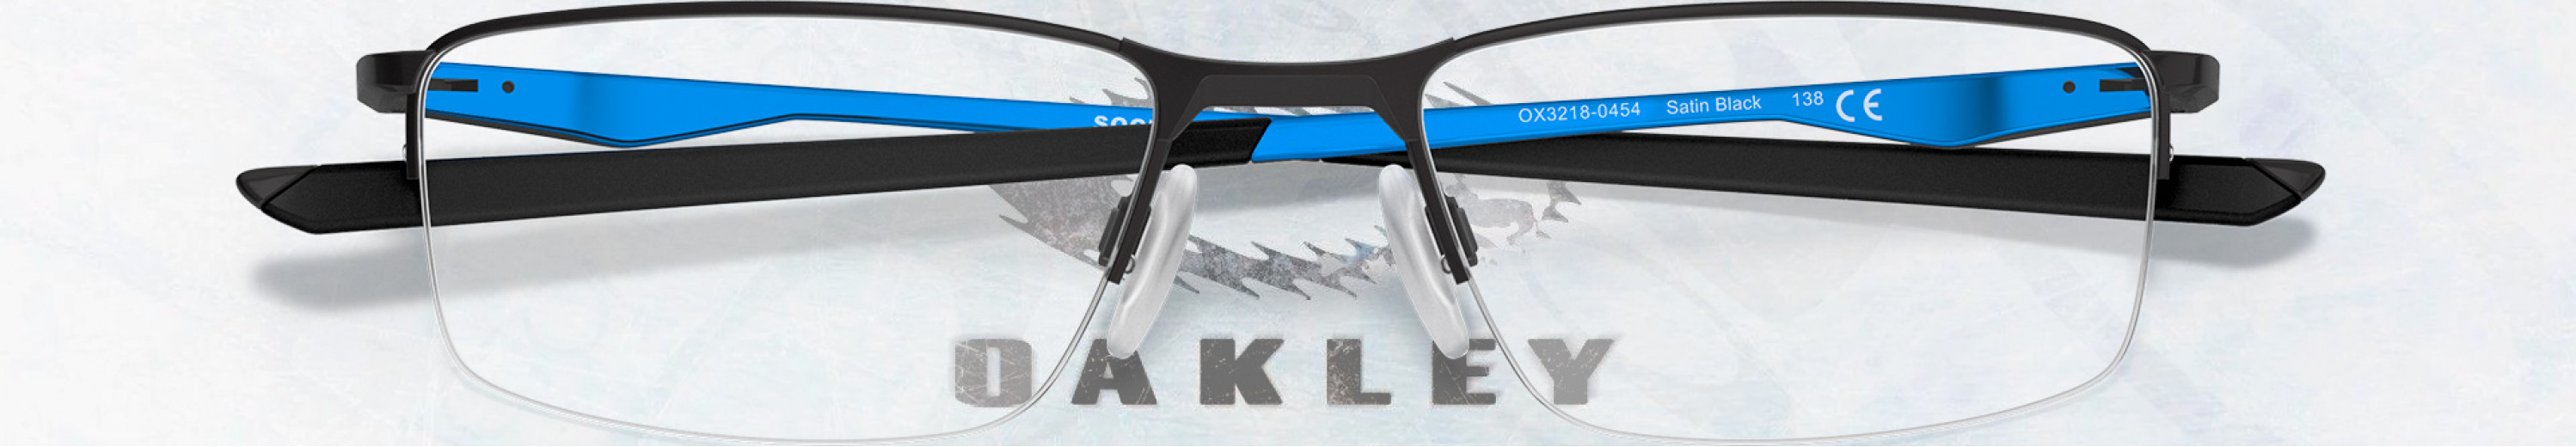 Oakley Socket 5.5 Eyewear Collection